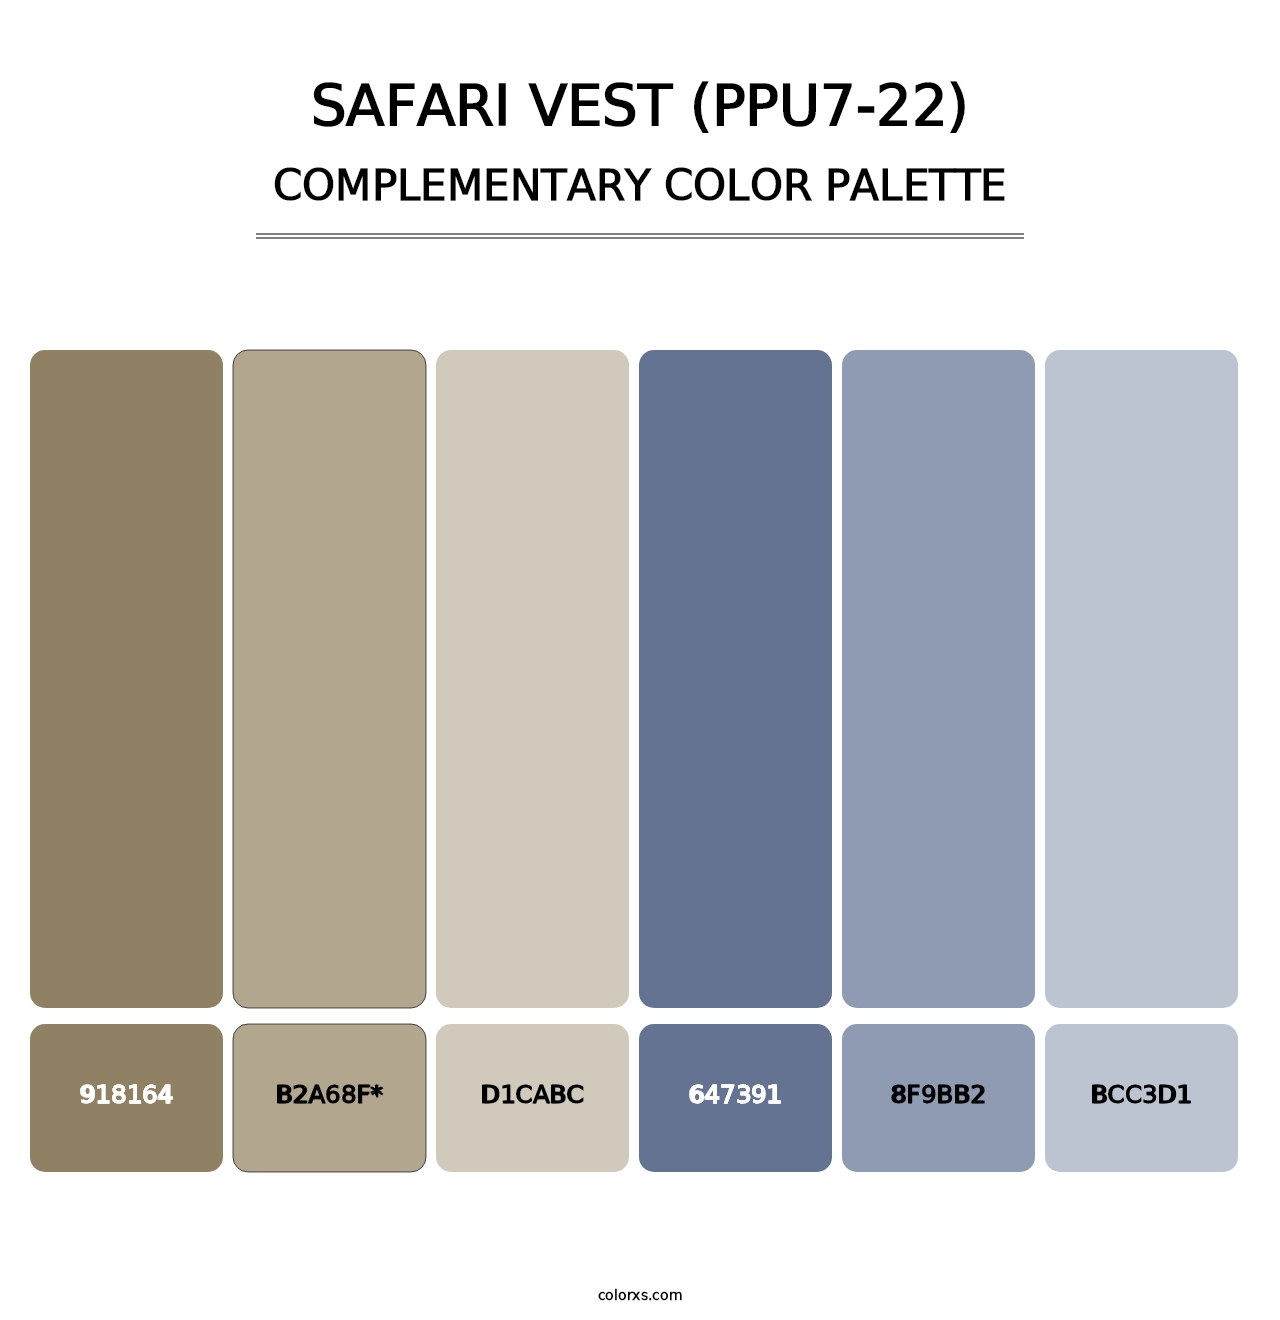 Safari Vest (PPU7-22) - Complementary Color Palette